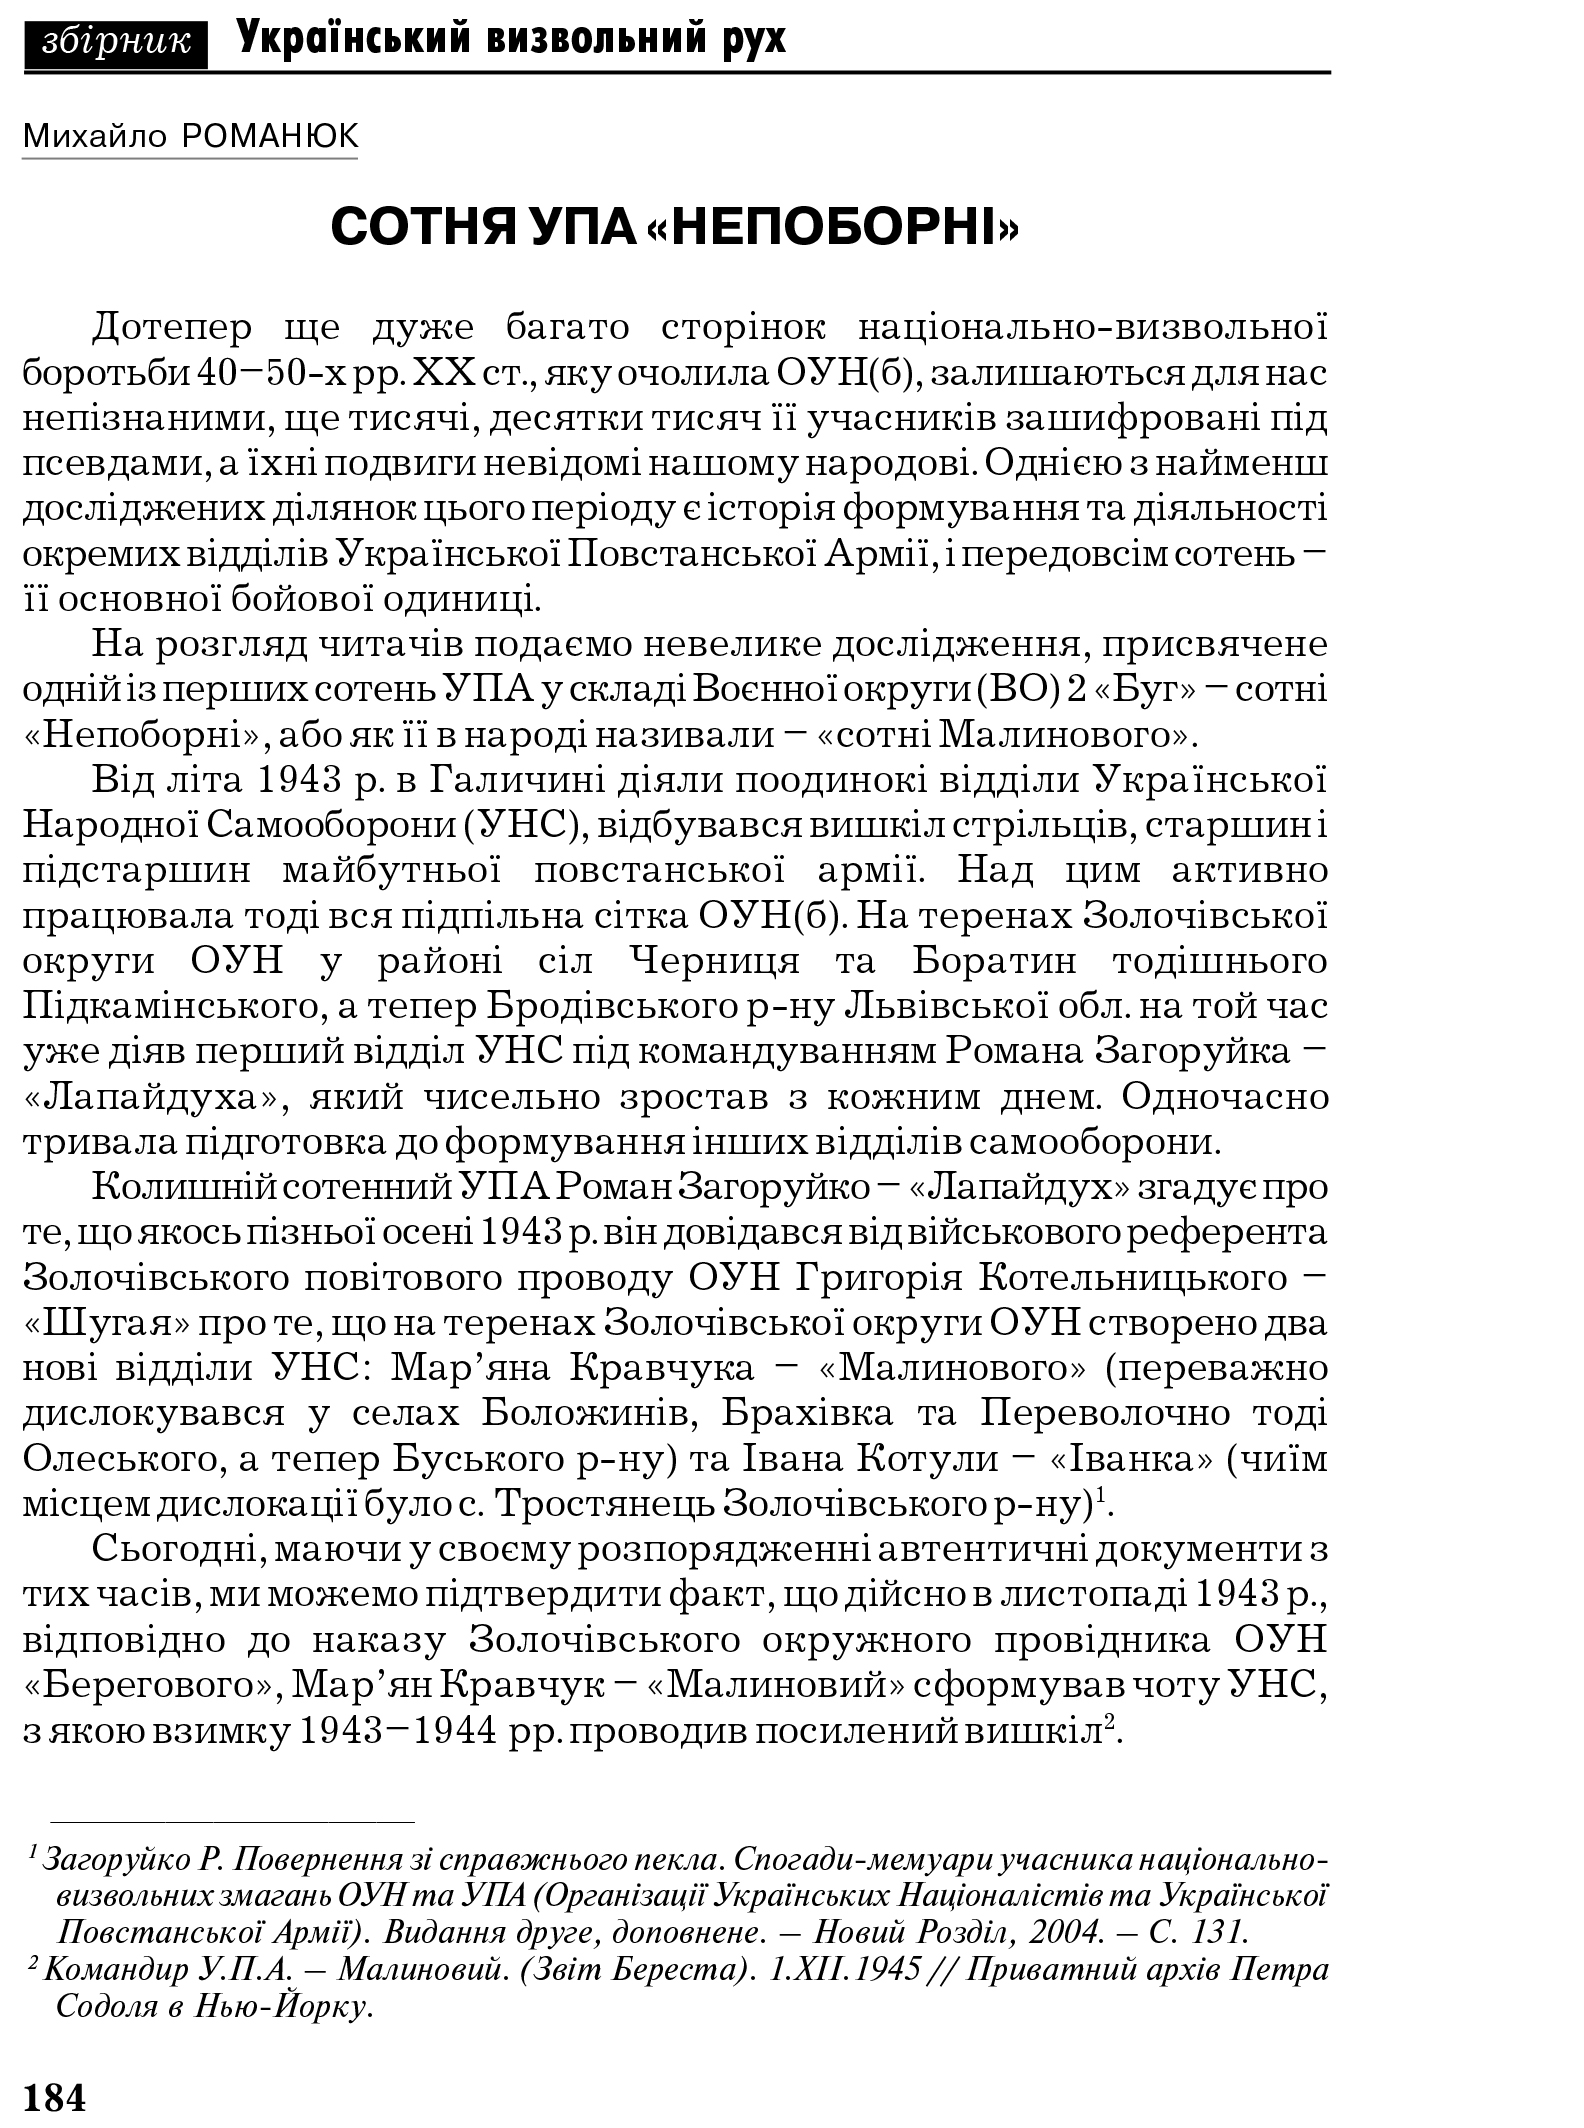 Український визвольний рух №6, ст. 184 - 210